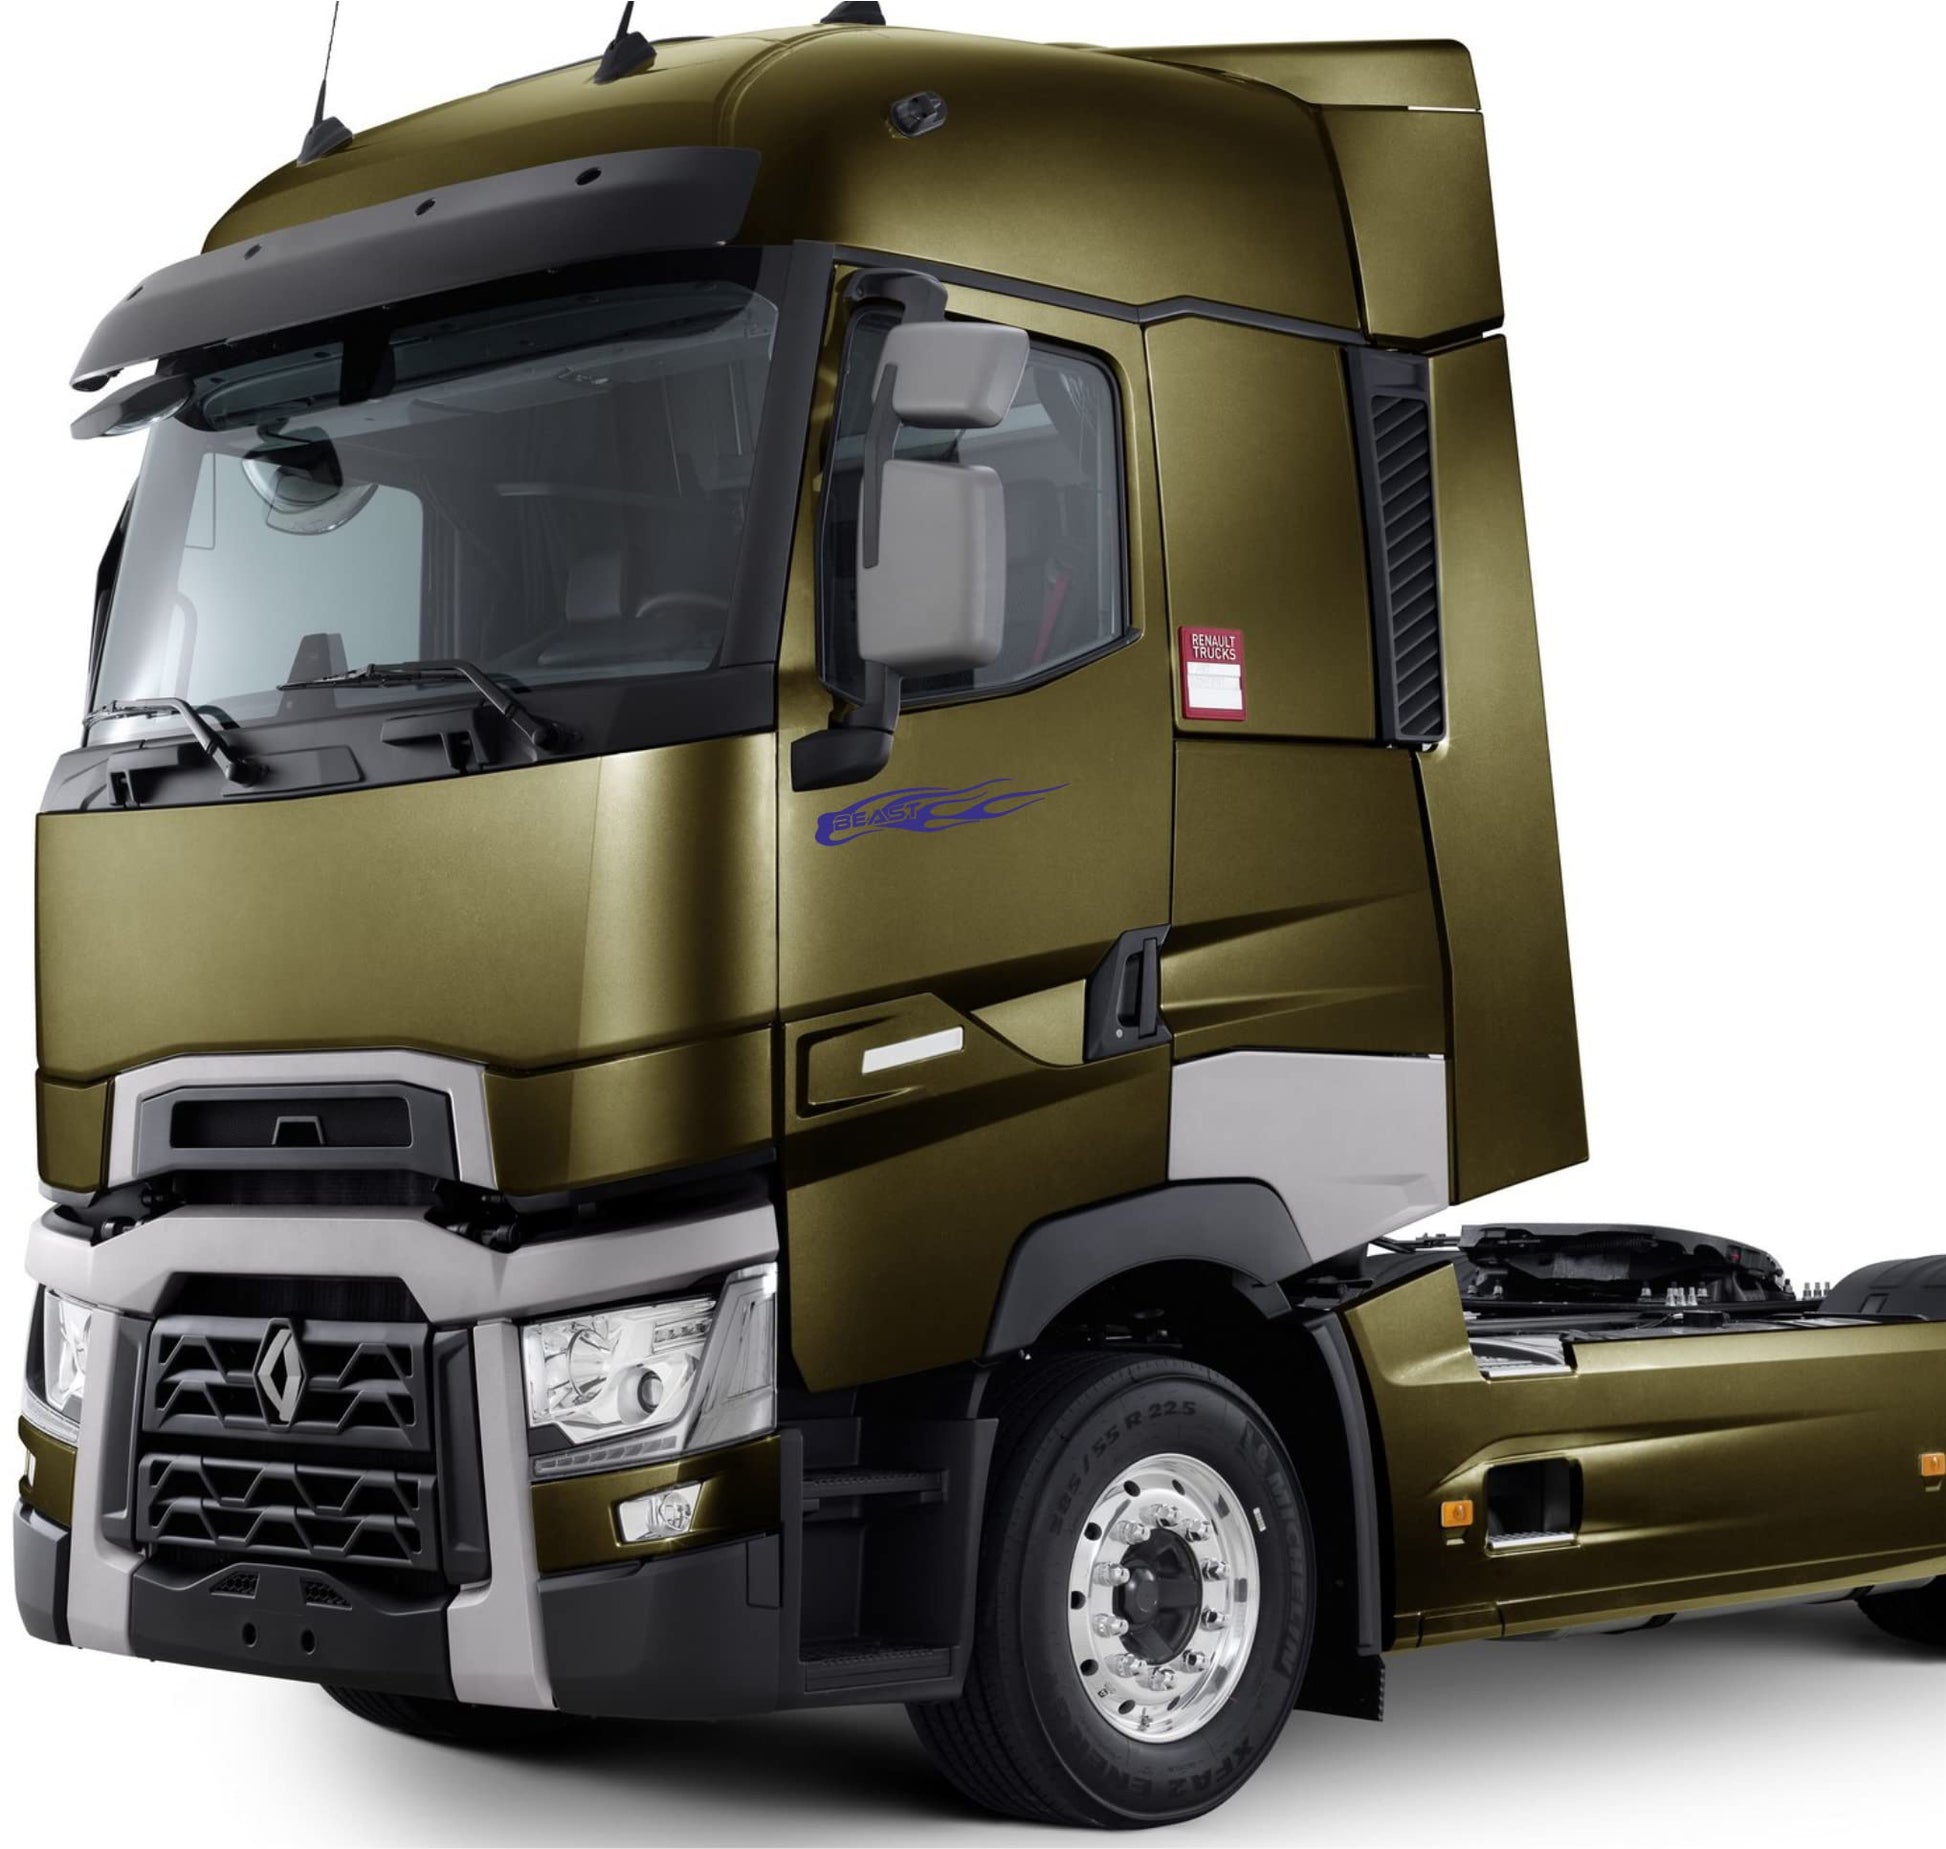 DualColorStampe Adesivi compatibili con Scania Iveco Man Daf Volvo per camion tir furgone beast bestia decorazioni camion accessori stickers COD.0223 a €18.90 solo da DualColorStampe